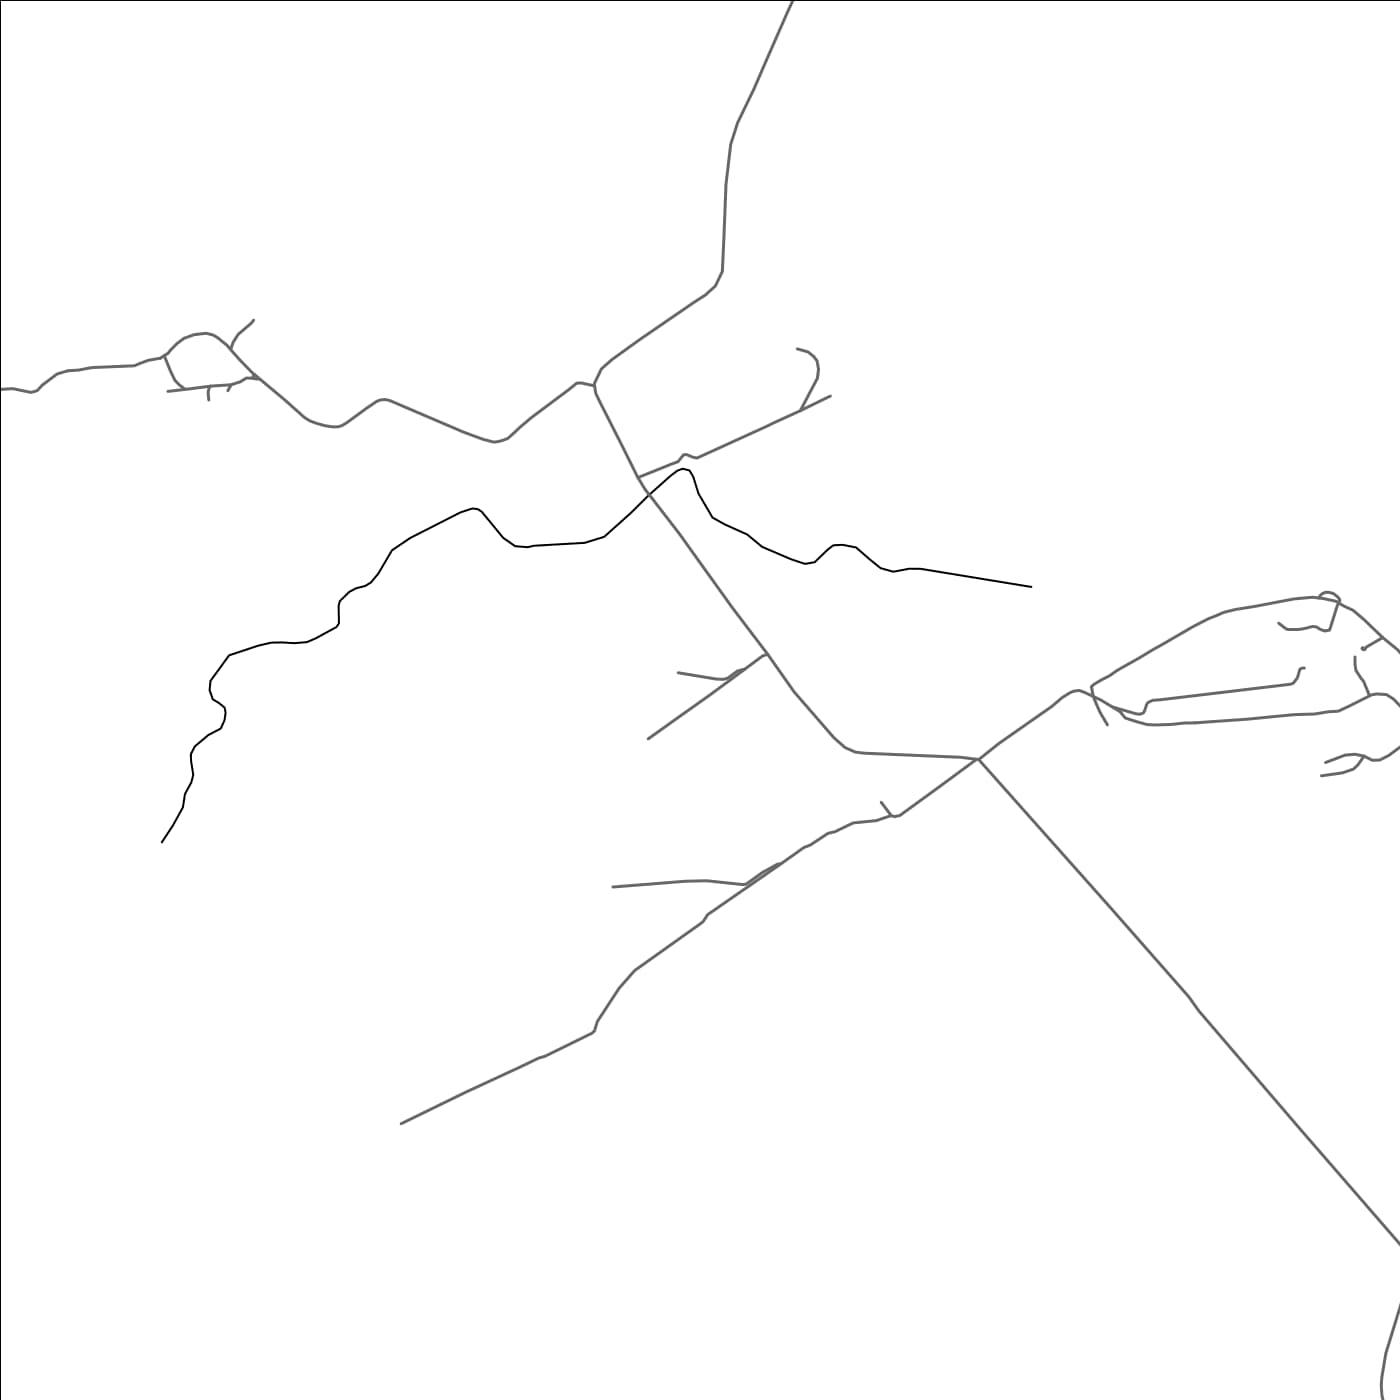 ROAD MAP OF NORSUP, VANUATU BY MAPBAKES